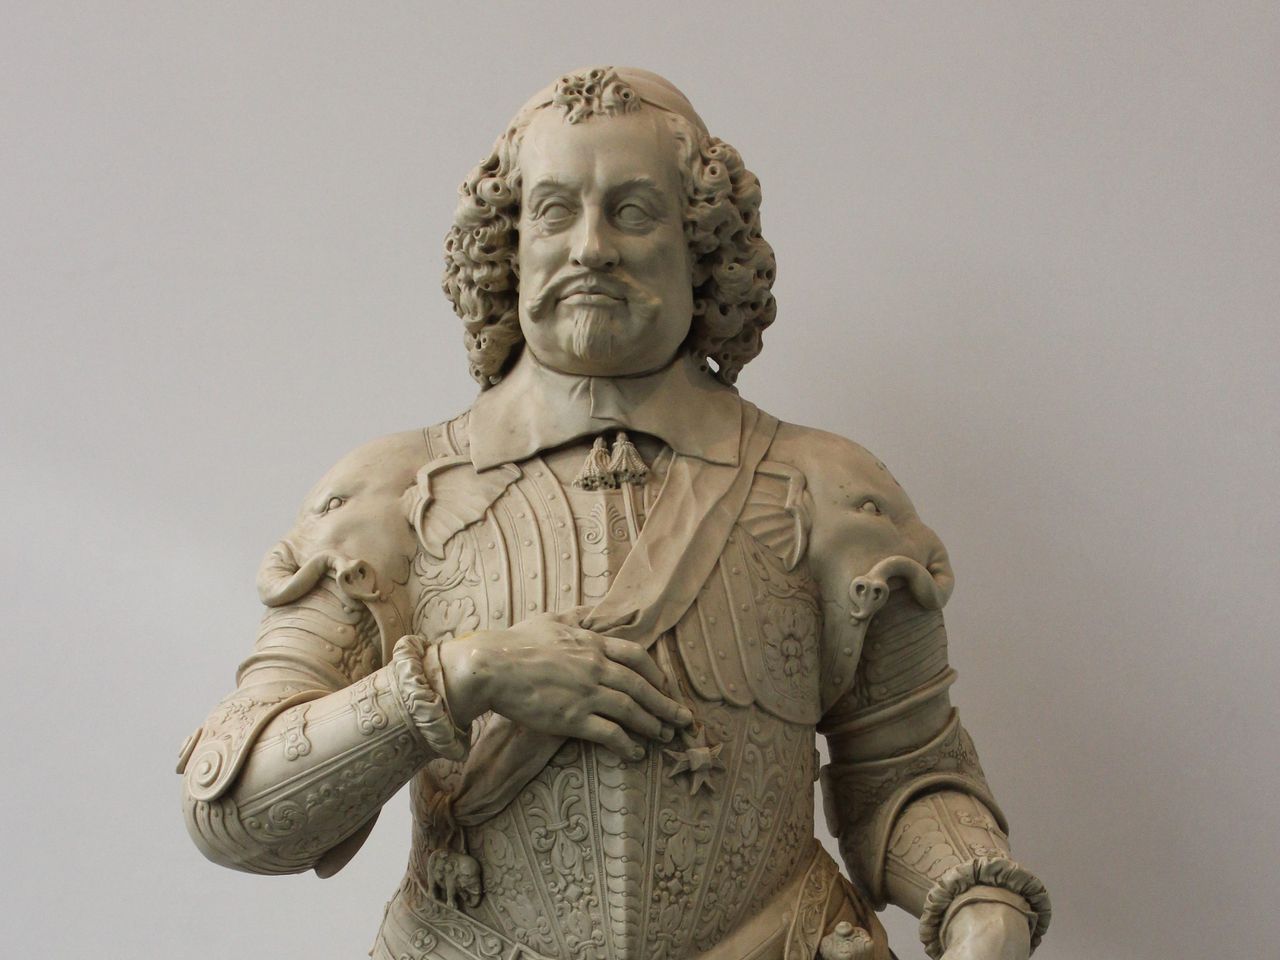 Het kunststoffen borstbeeld van Johan Maurits van Nassau.